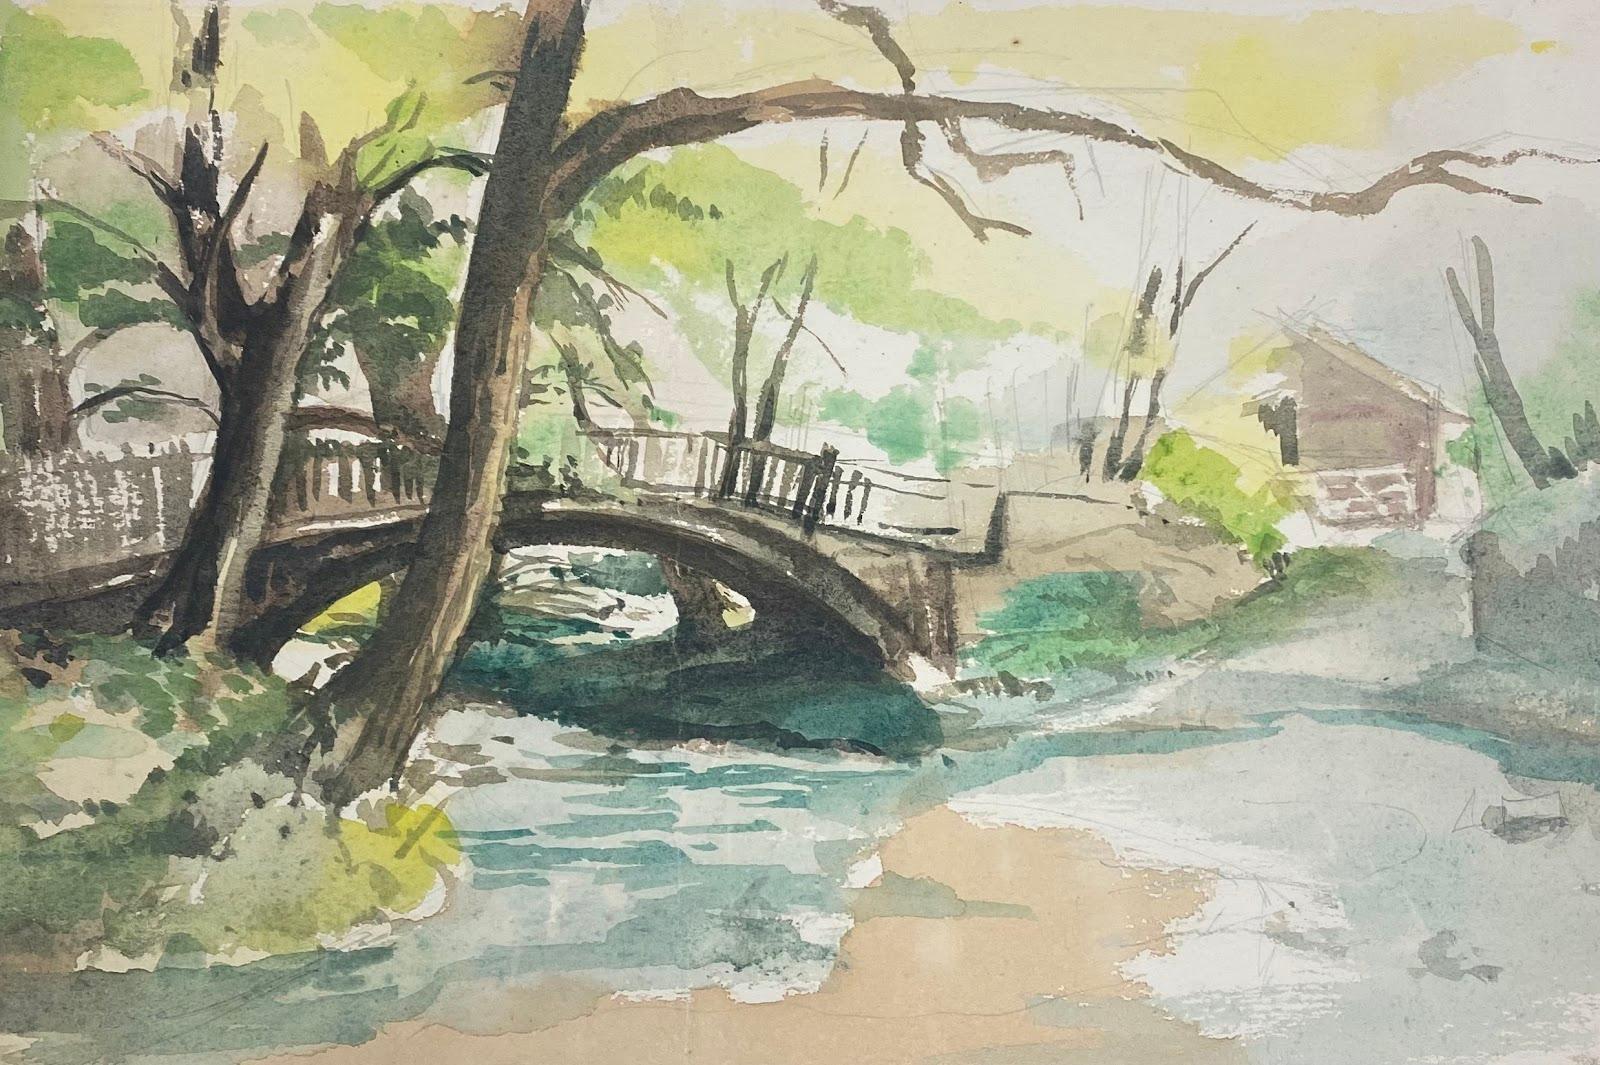 Frank Duffield Abstract Drawing – Britisch-impressionistisches Gemälde Brücke und schwebender Fluss im Landhausstil 